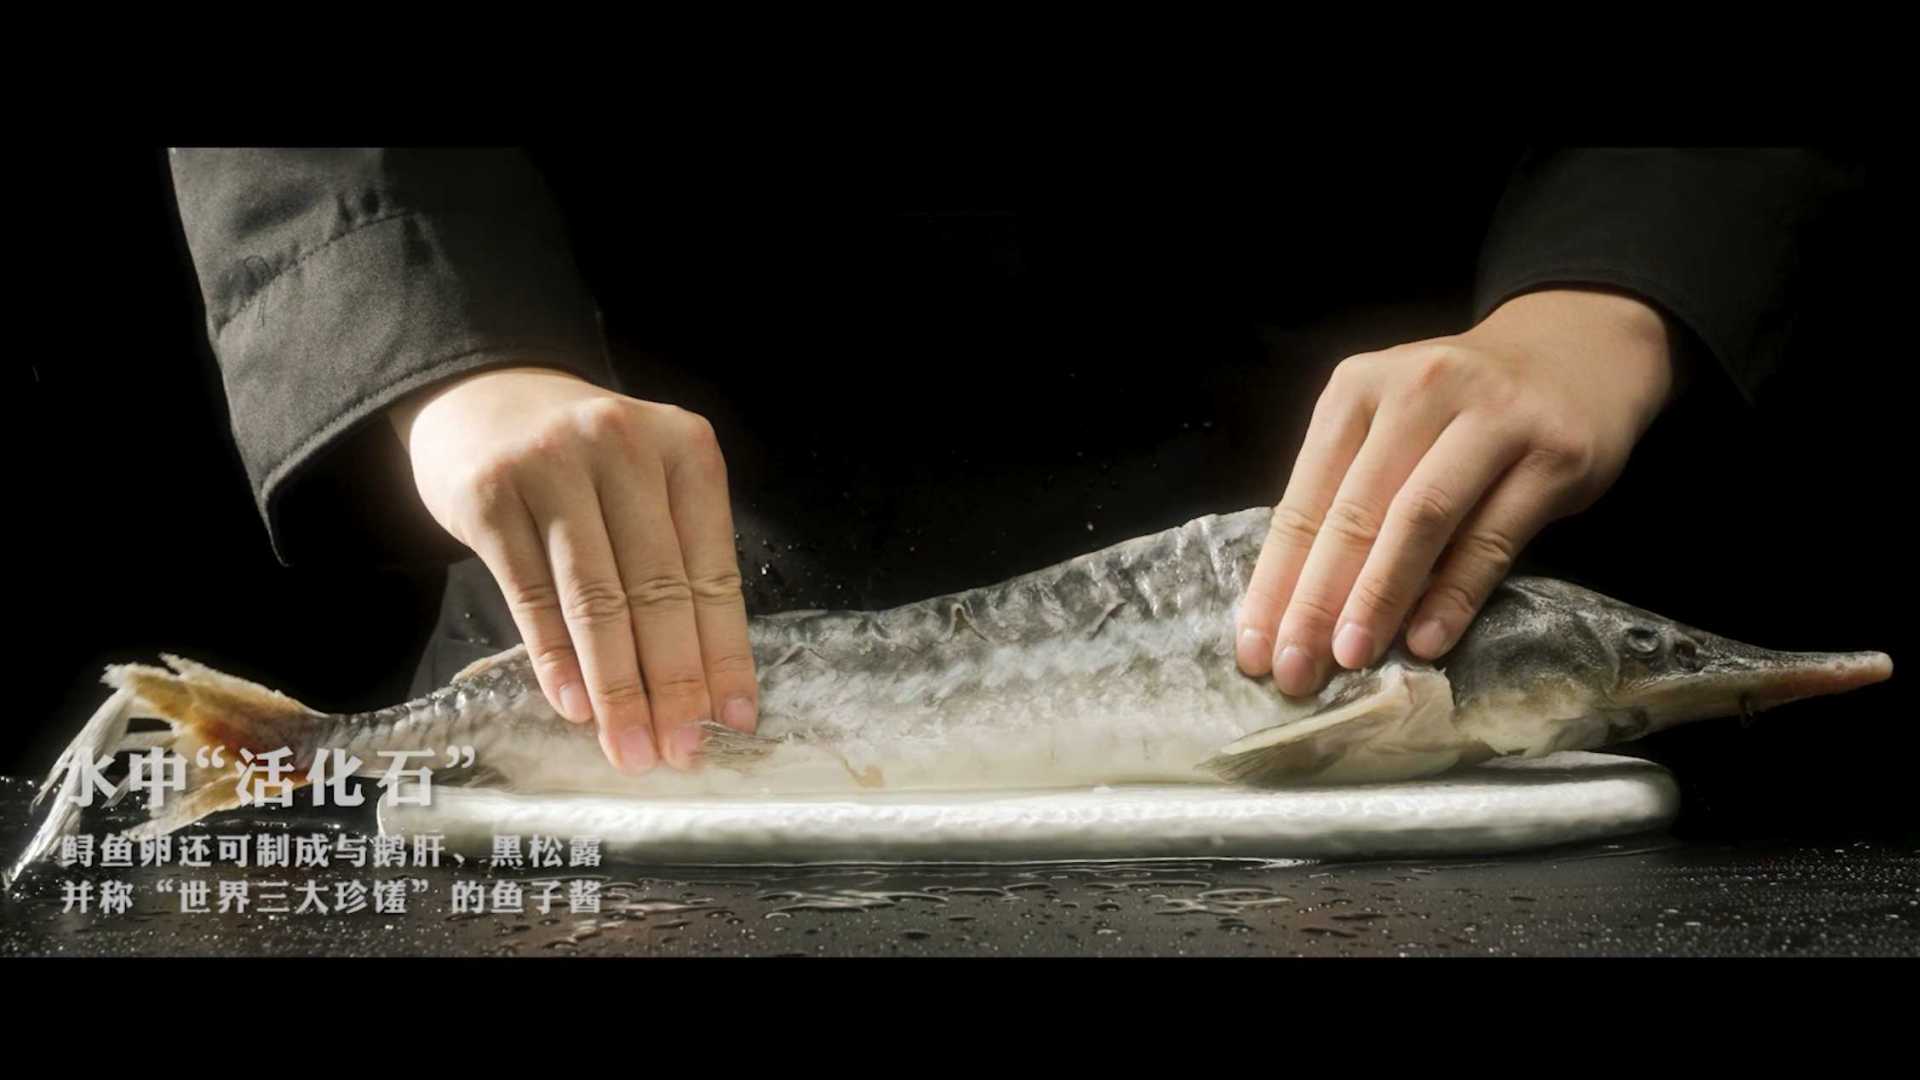 鲟龙鱼产品故事宣传片